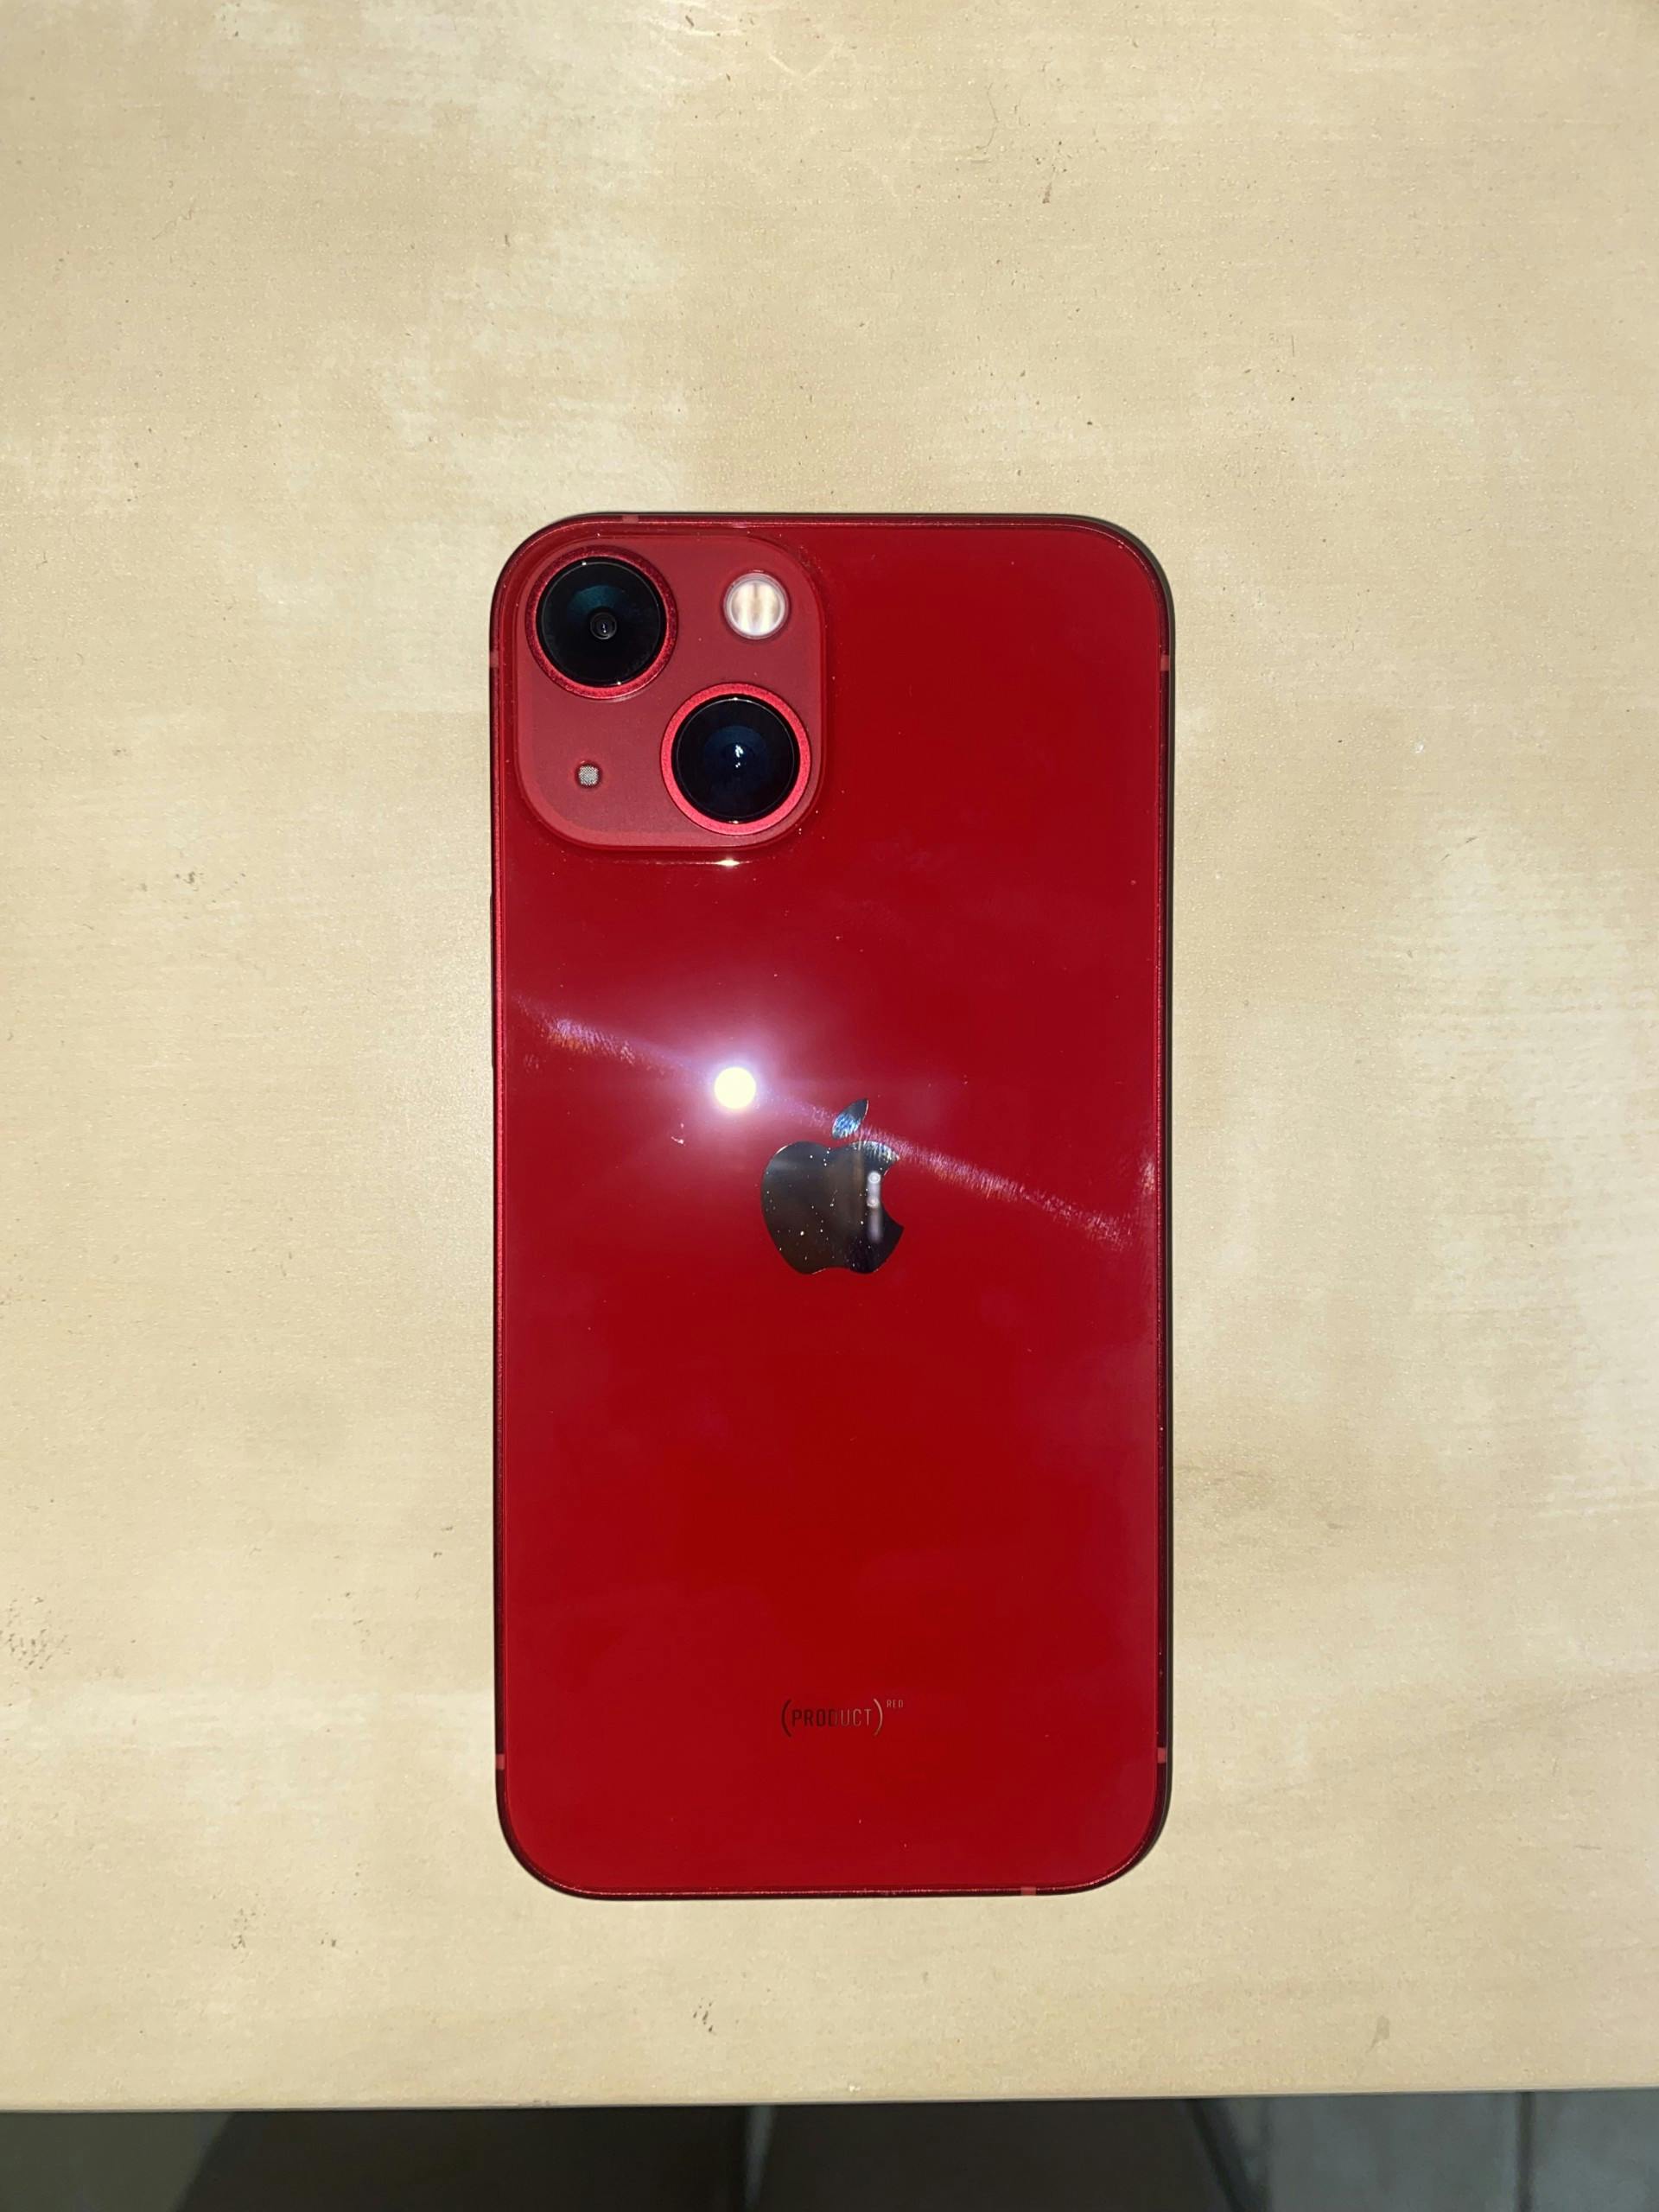 Apple iPhone 13 mini 128GB Red